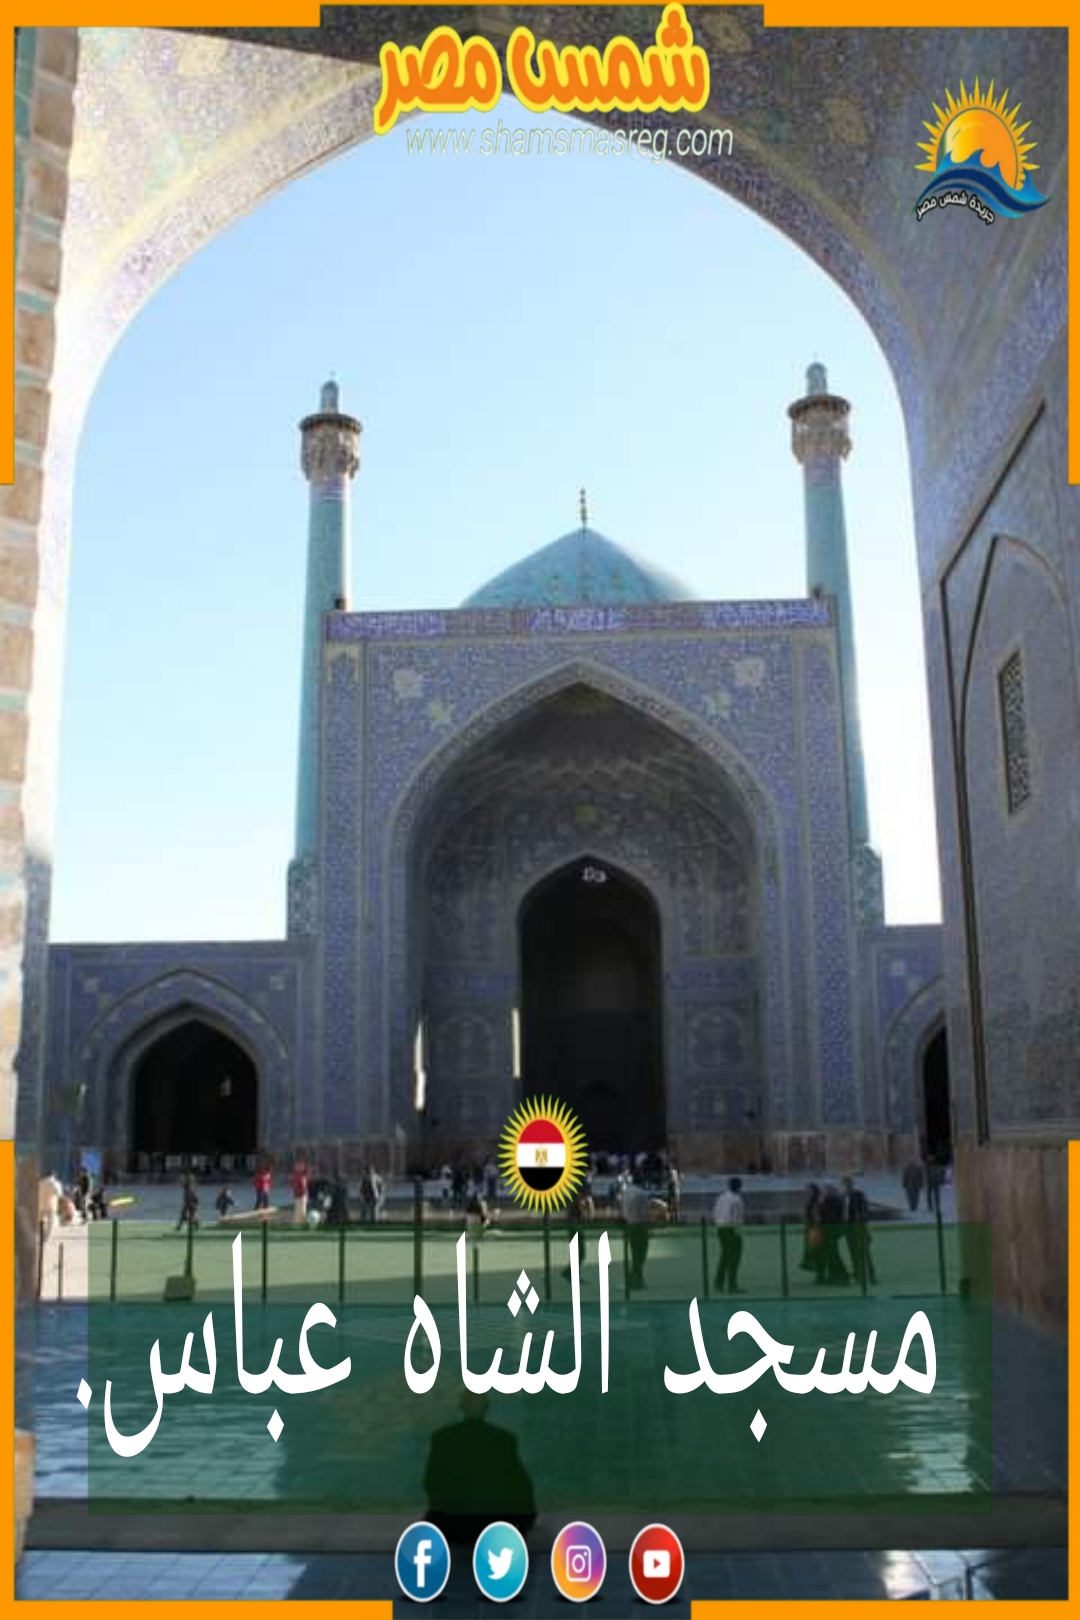 شمس مصر/ مسجد الشاه عباس.